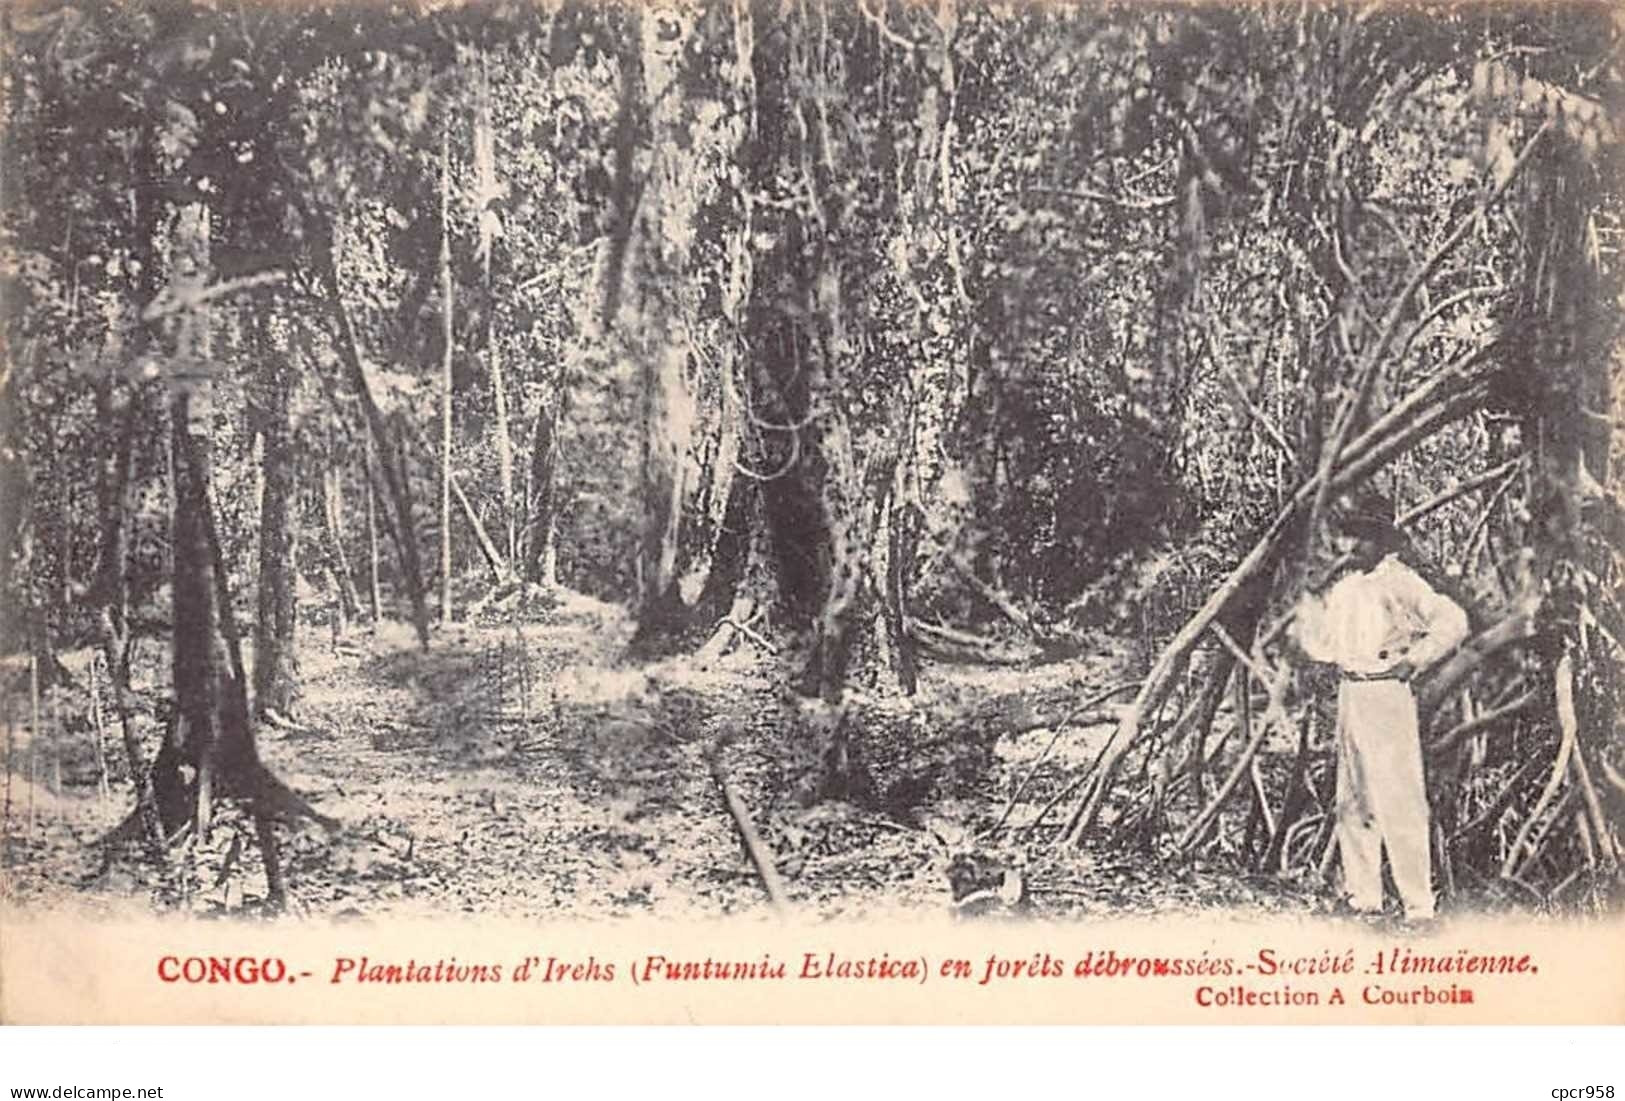 Congo Français - N°61540 - Plantations D'Irechs (Funtumia Elastica) En Forêts Débroussés - Société Alimaïnne - Congo Français